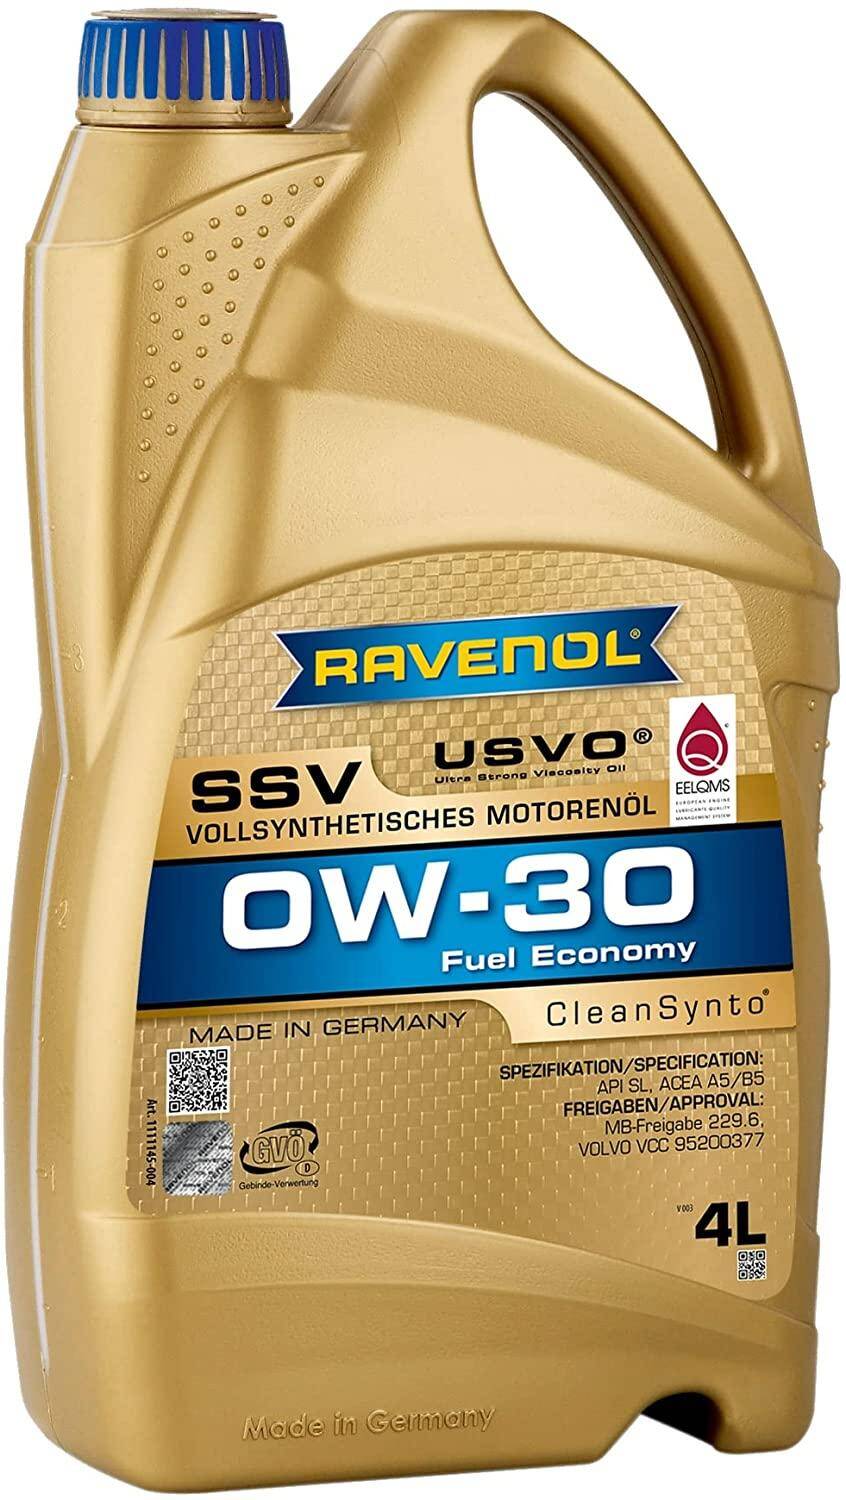 Ravenol SSV 0W30 4L